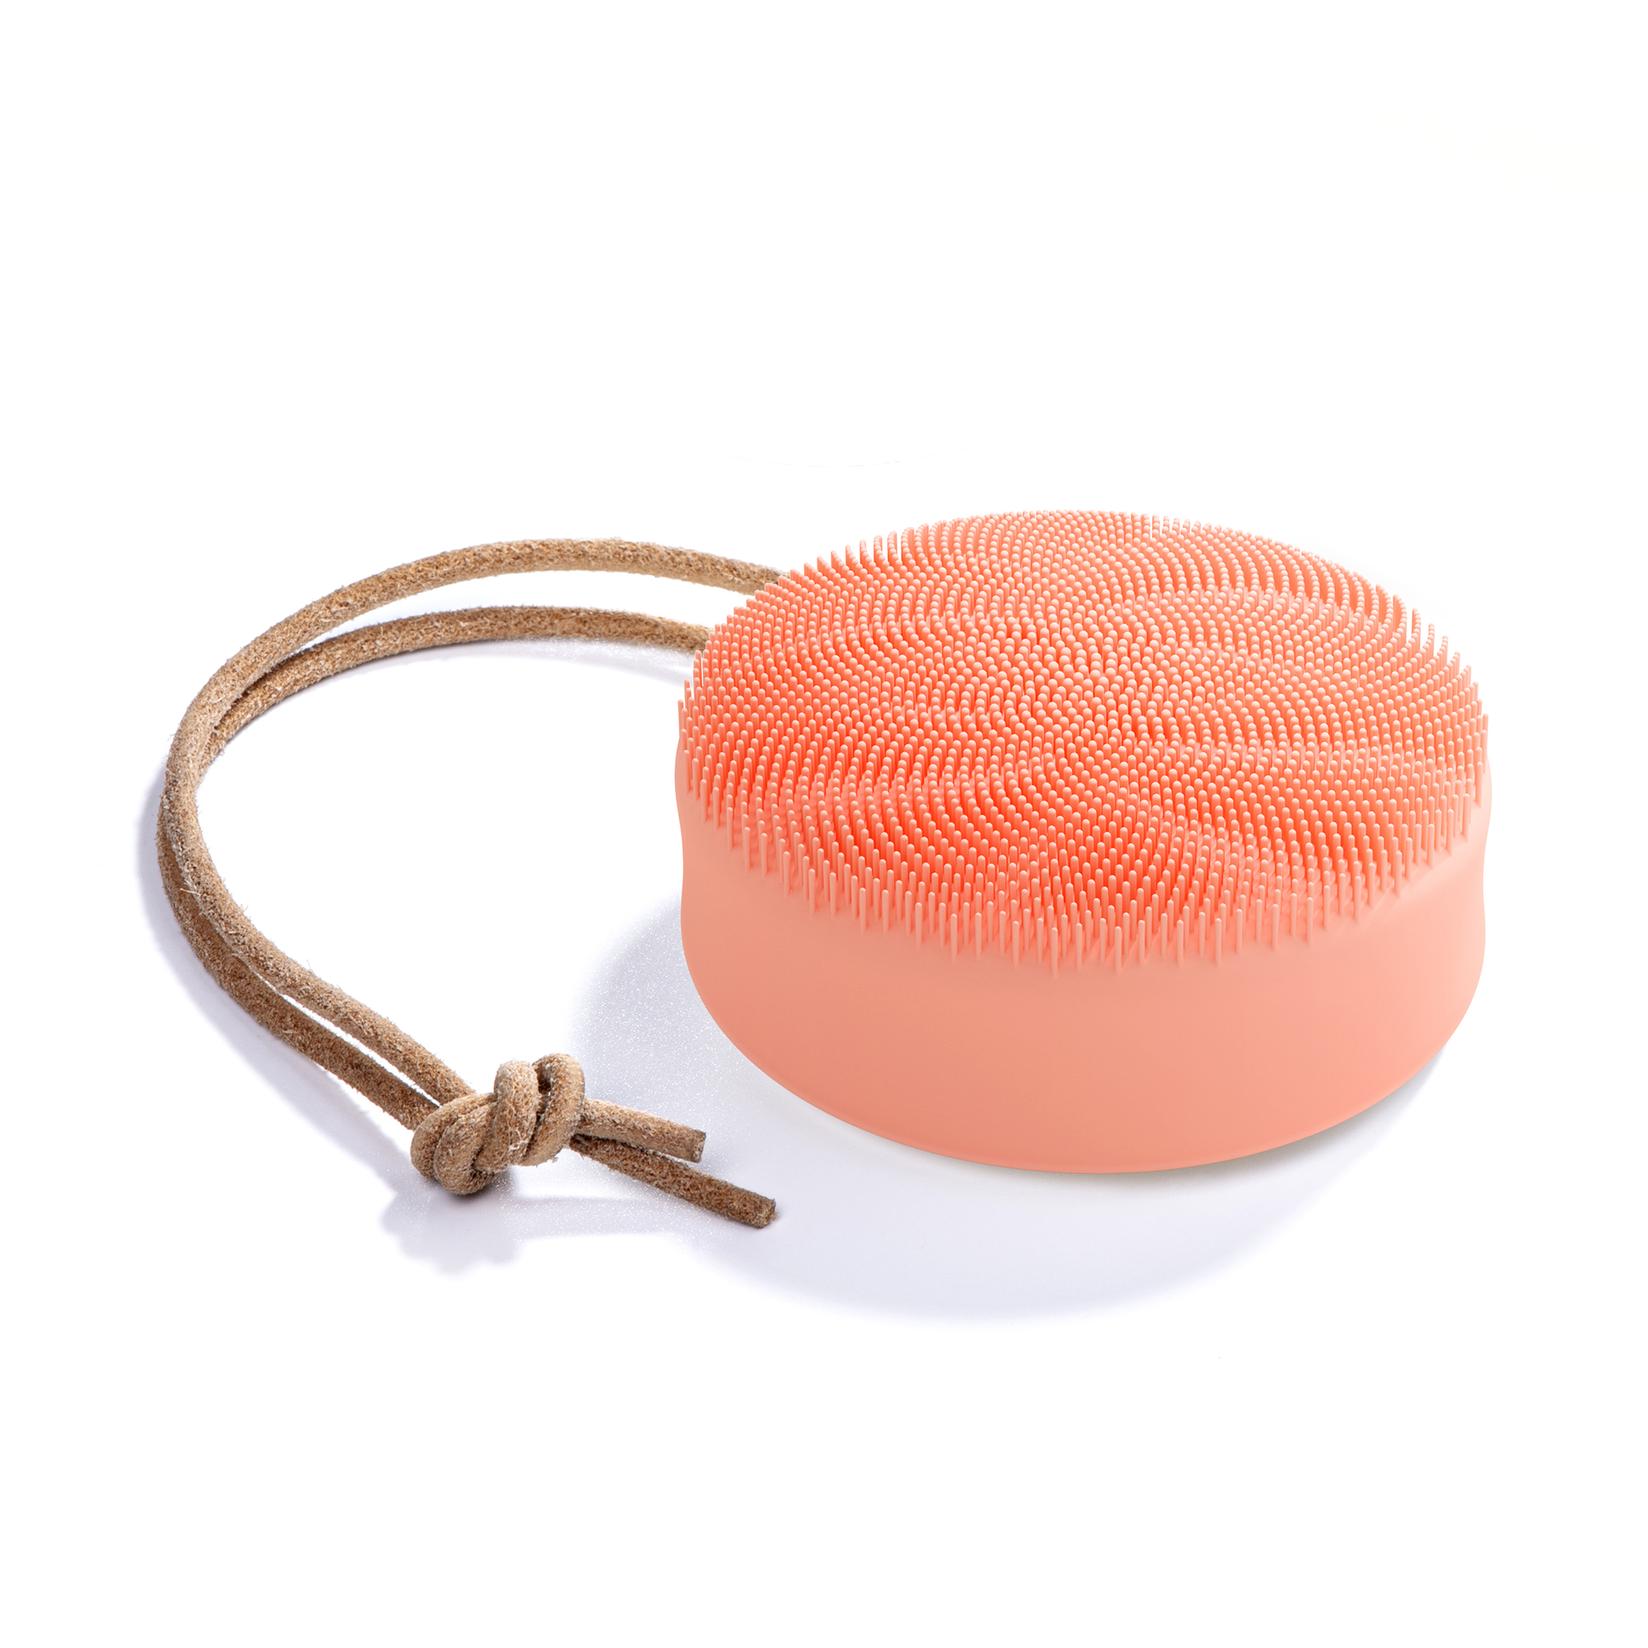 FOREO LUNA 4 Body Peach Perfect Pametni sonični uređaj i masažer za čišćenje tela